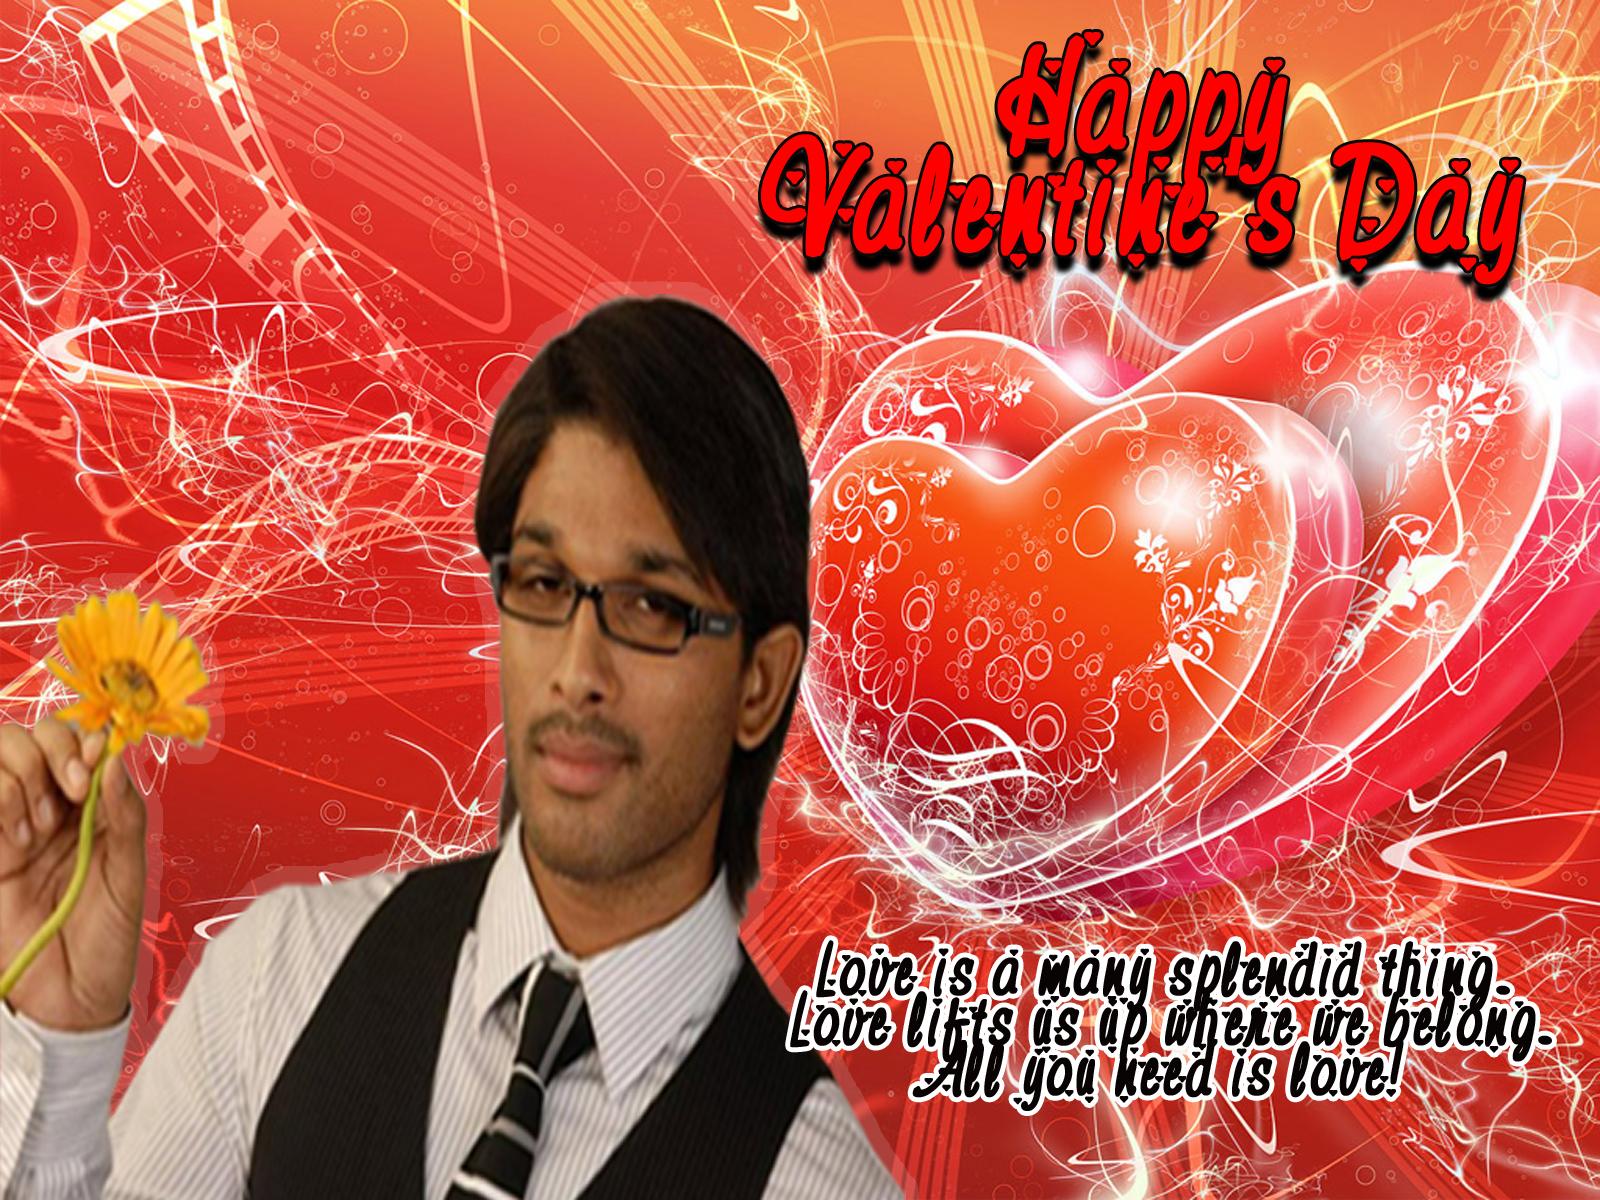 http://1.bp.blogspot.com/-pxxue9gDpDQ/TVd1suDIa-I/AAAAAAAAAiw/ynhd9-QfDuA/s1600/Valentines%2527s+Day+Special.jpg